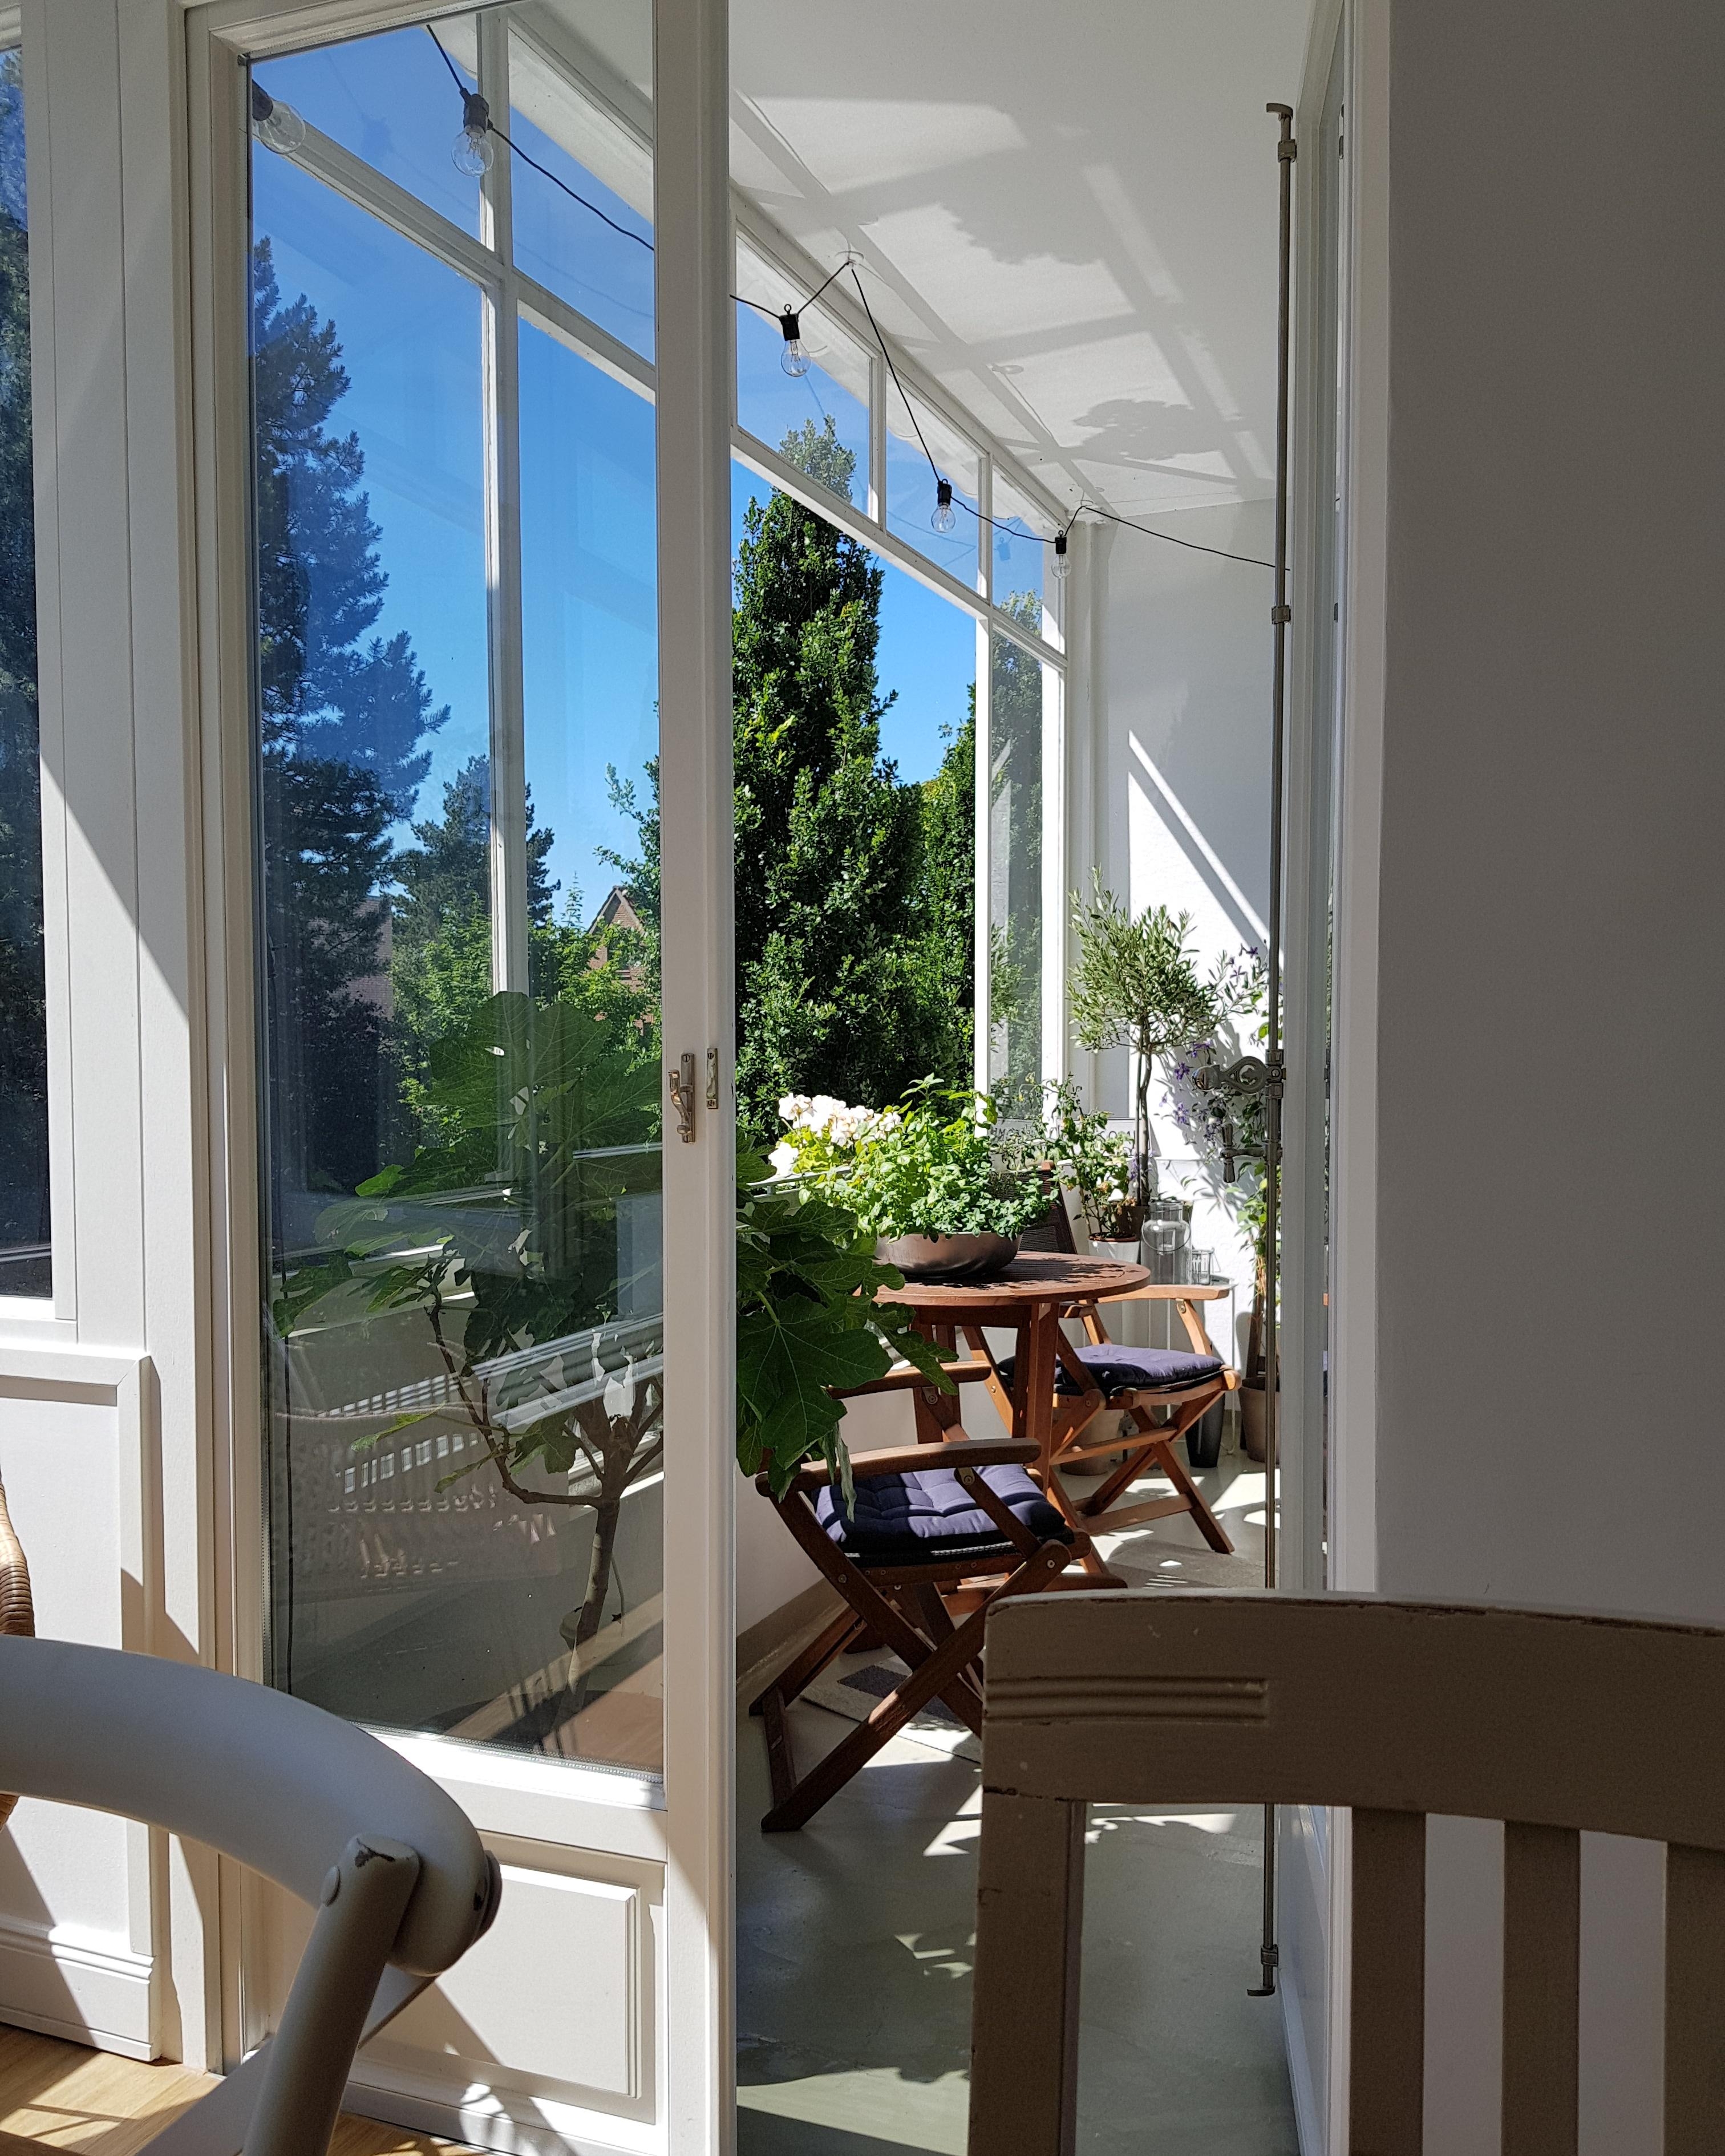 Mir wird der Sommer sehr fehlen, obwohl so gemüdliche auf Couch kann es auch schön sein #balkon #pflanzen #blumen 